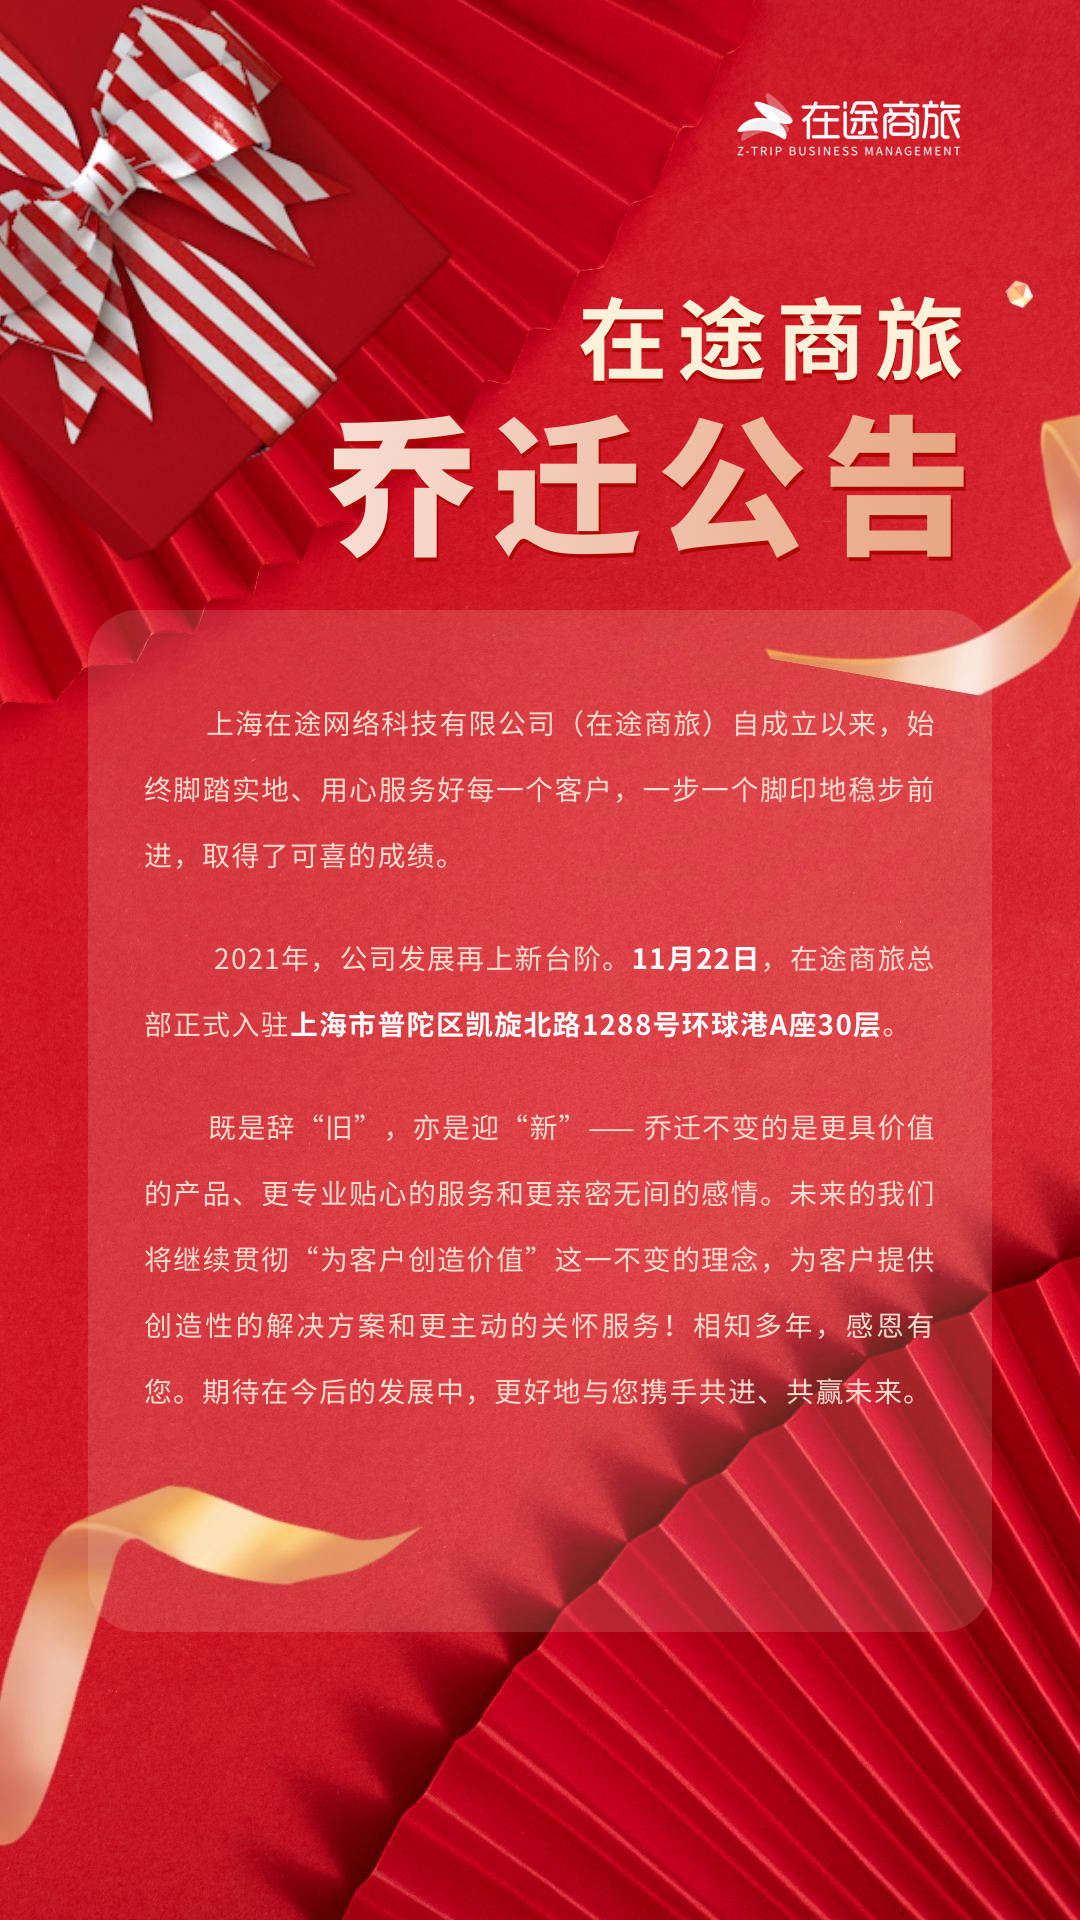 在途商旅总部兹定于2021年11月22日乔迁至上海普陀区a